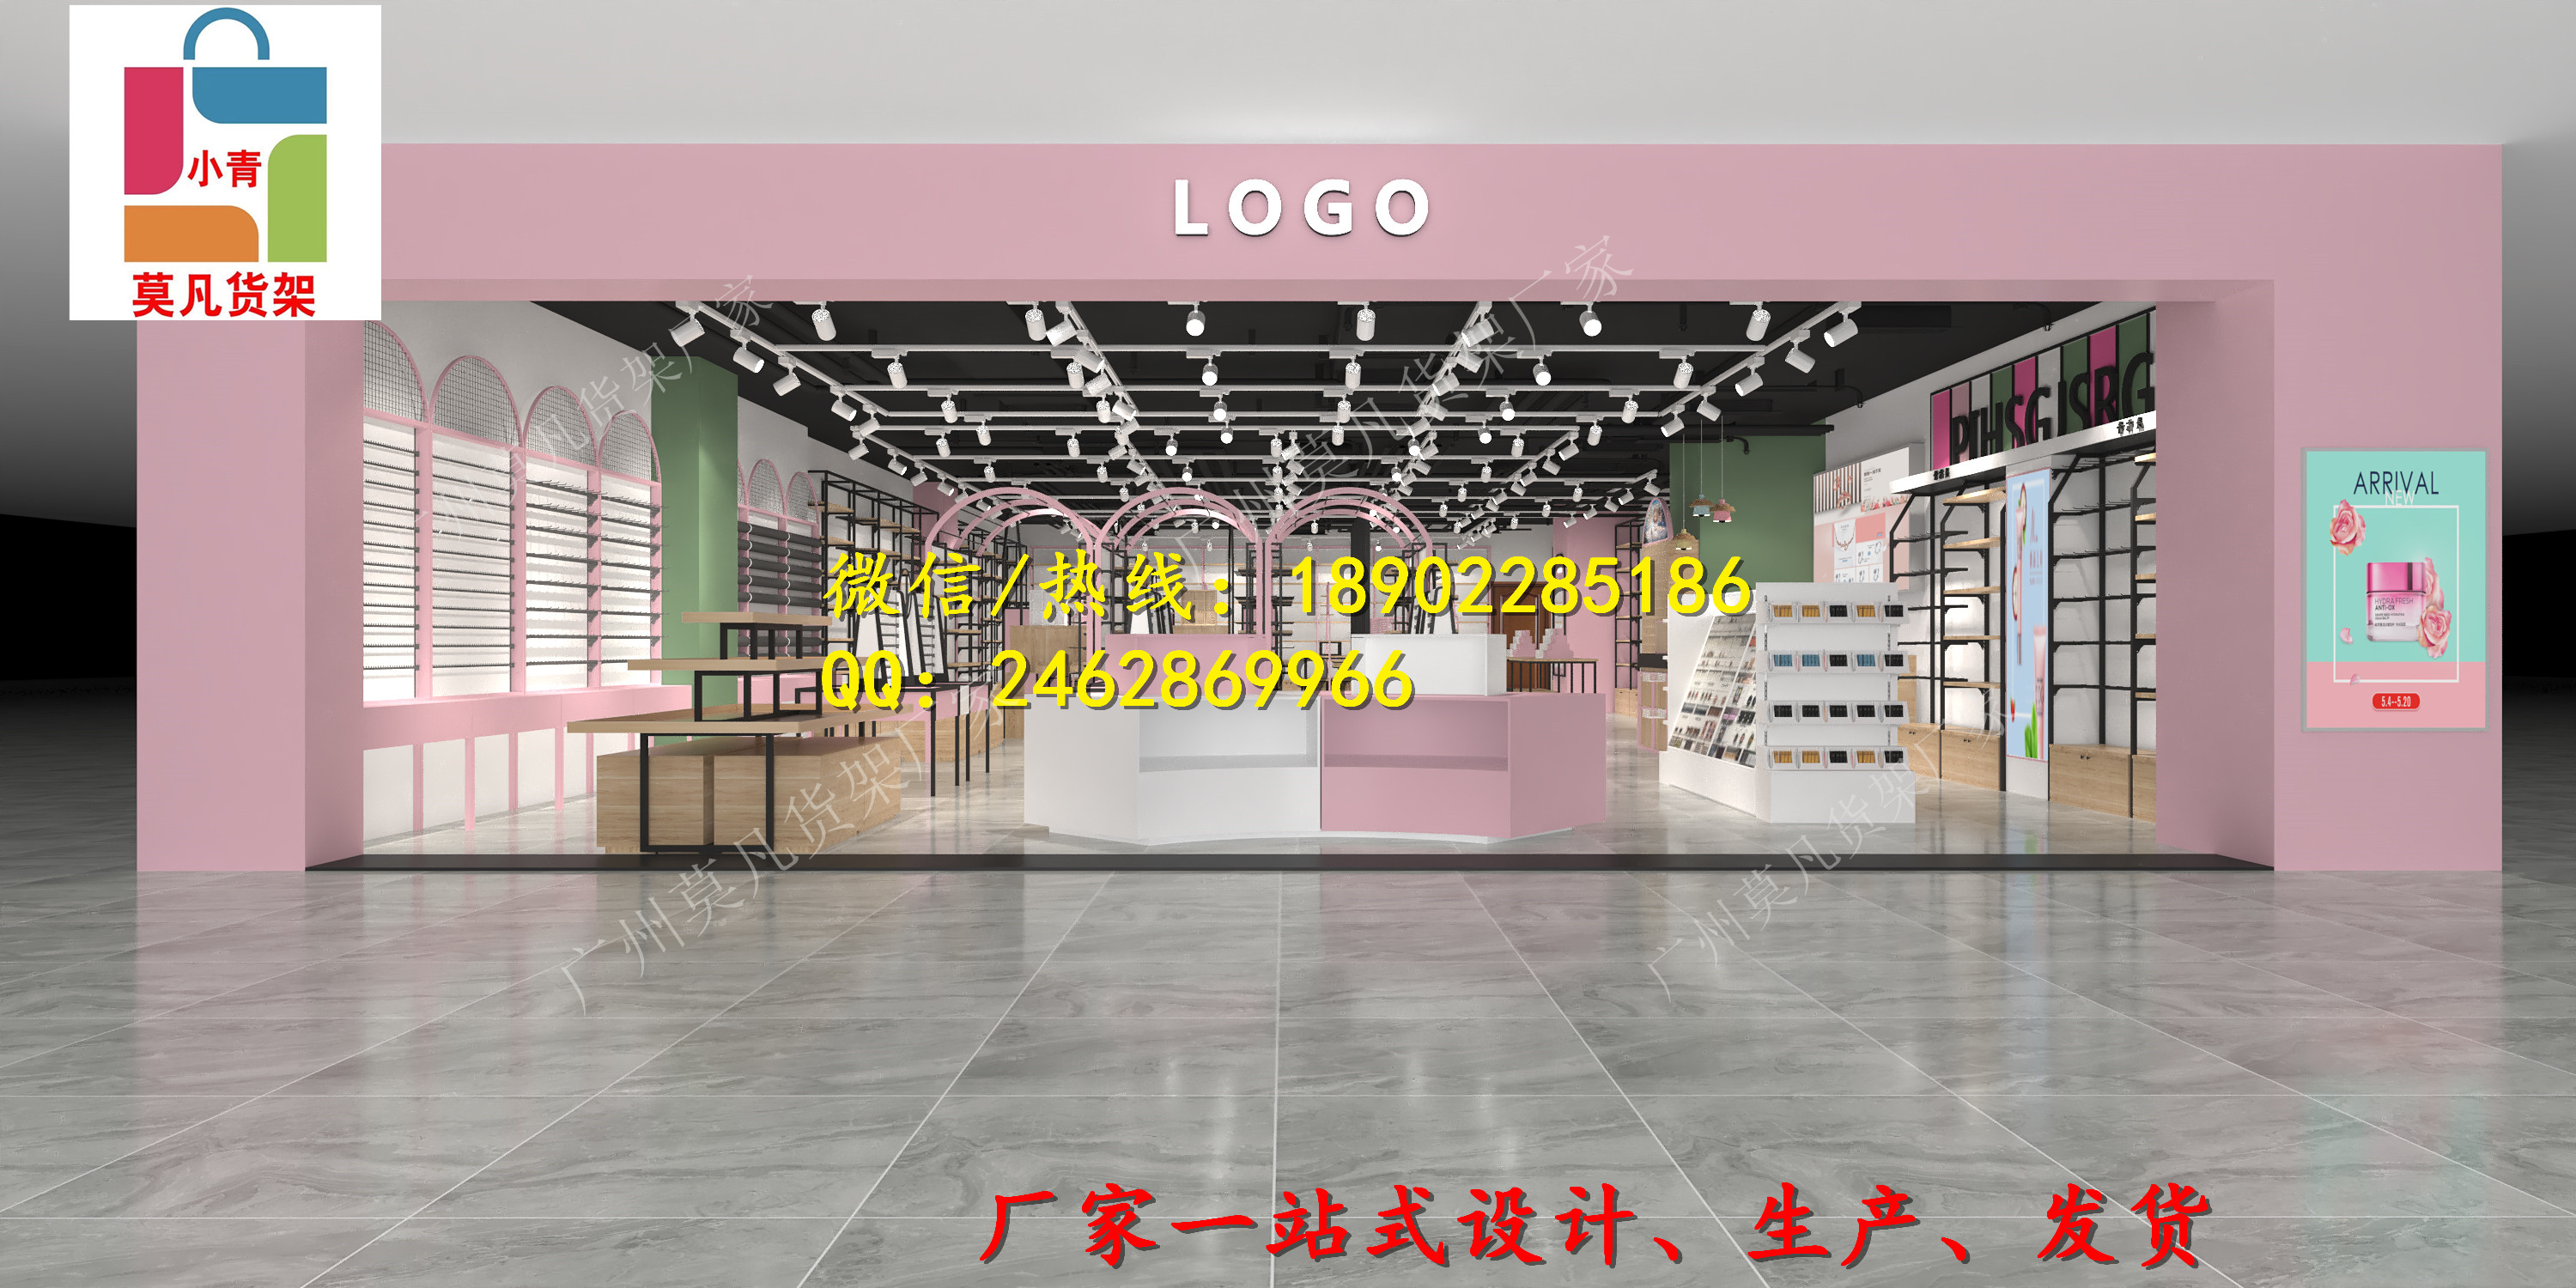 青岛kkv饰品店货架设计以亮黄色为主要视觉场景升级